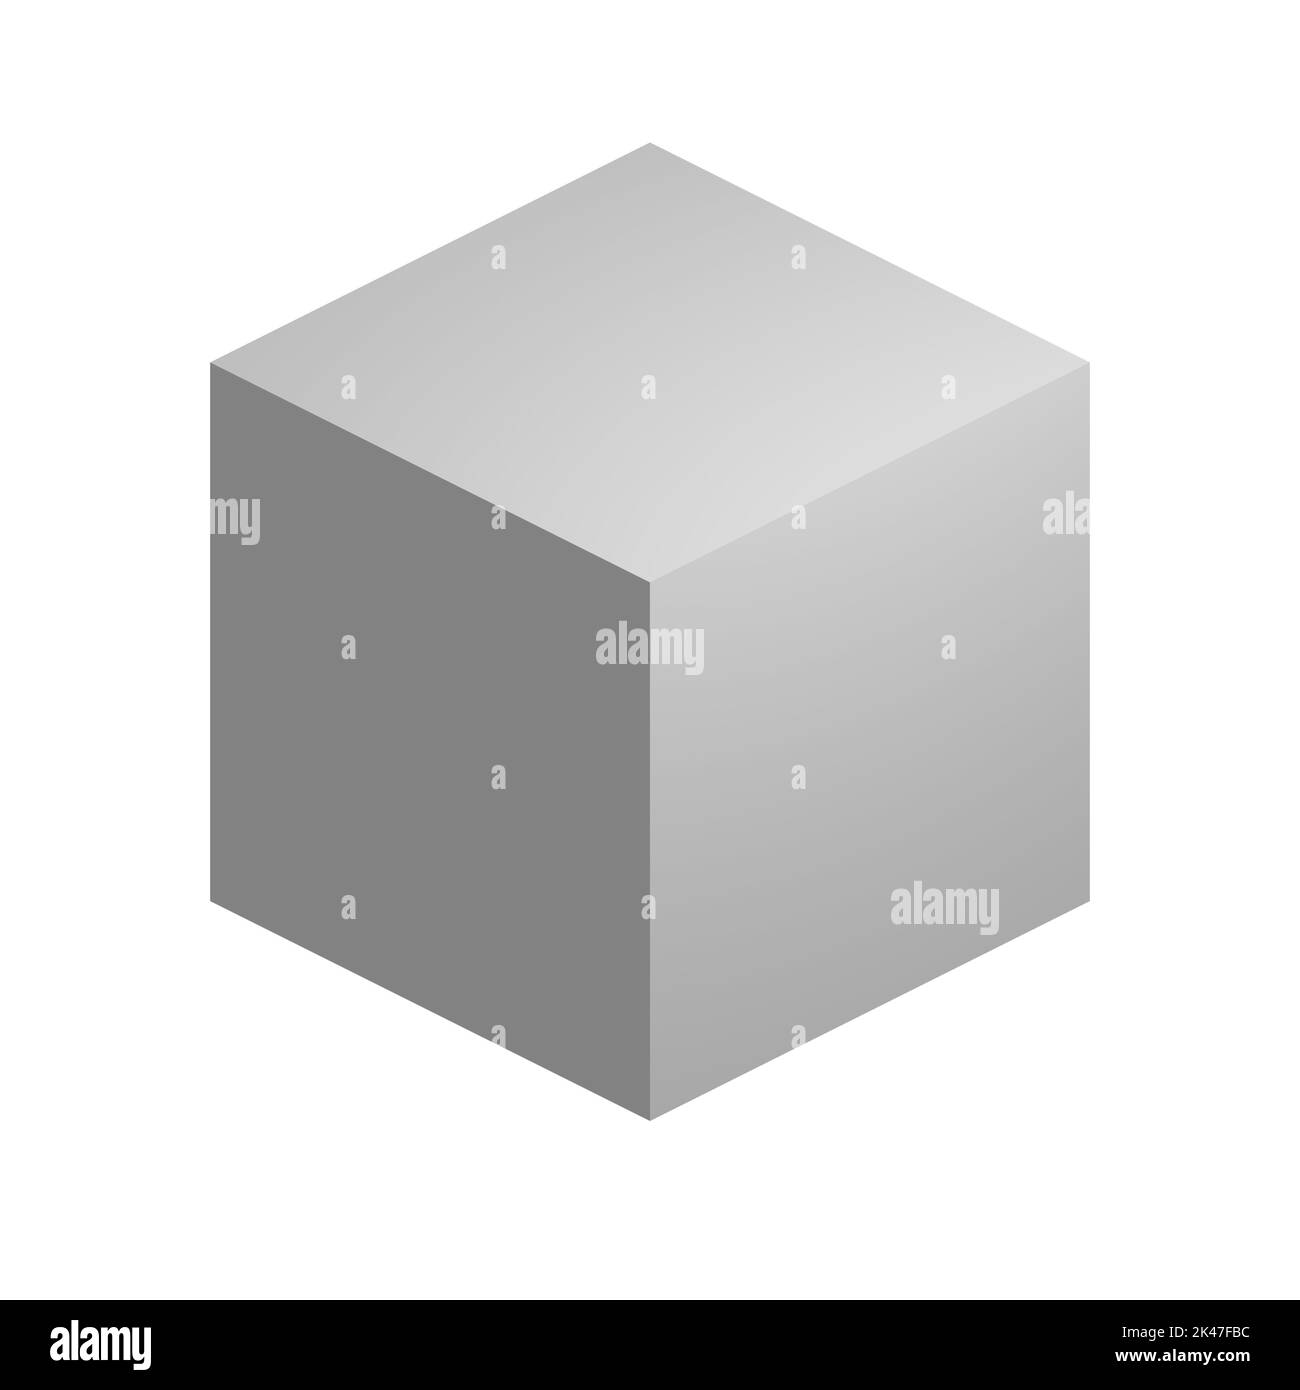 Cubo blanco ortográfico, escala de grises neutra, gris plano, blanco y negro, fondo blanco, recorte Foto de stock